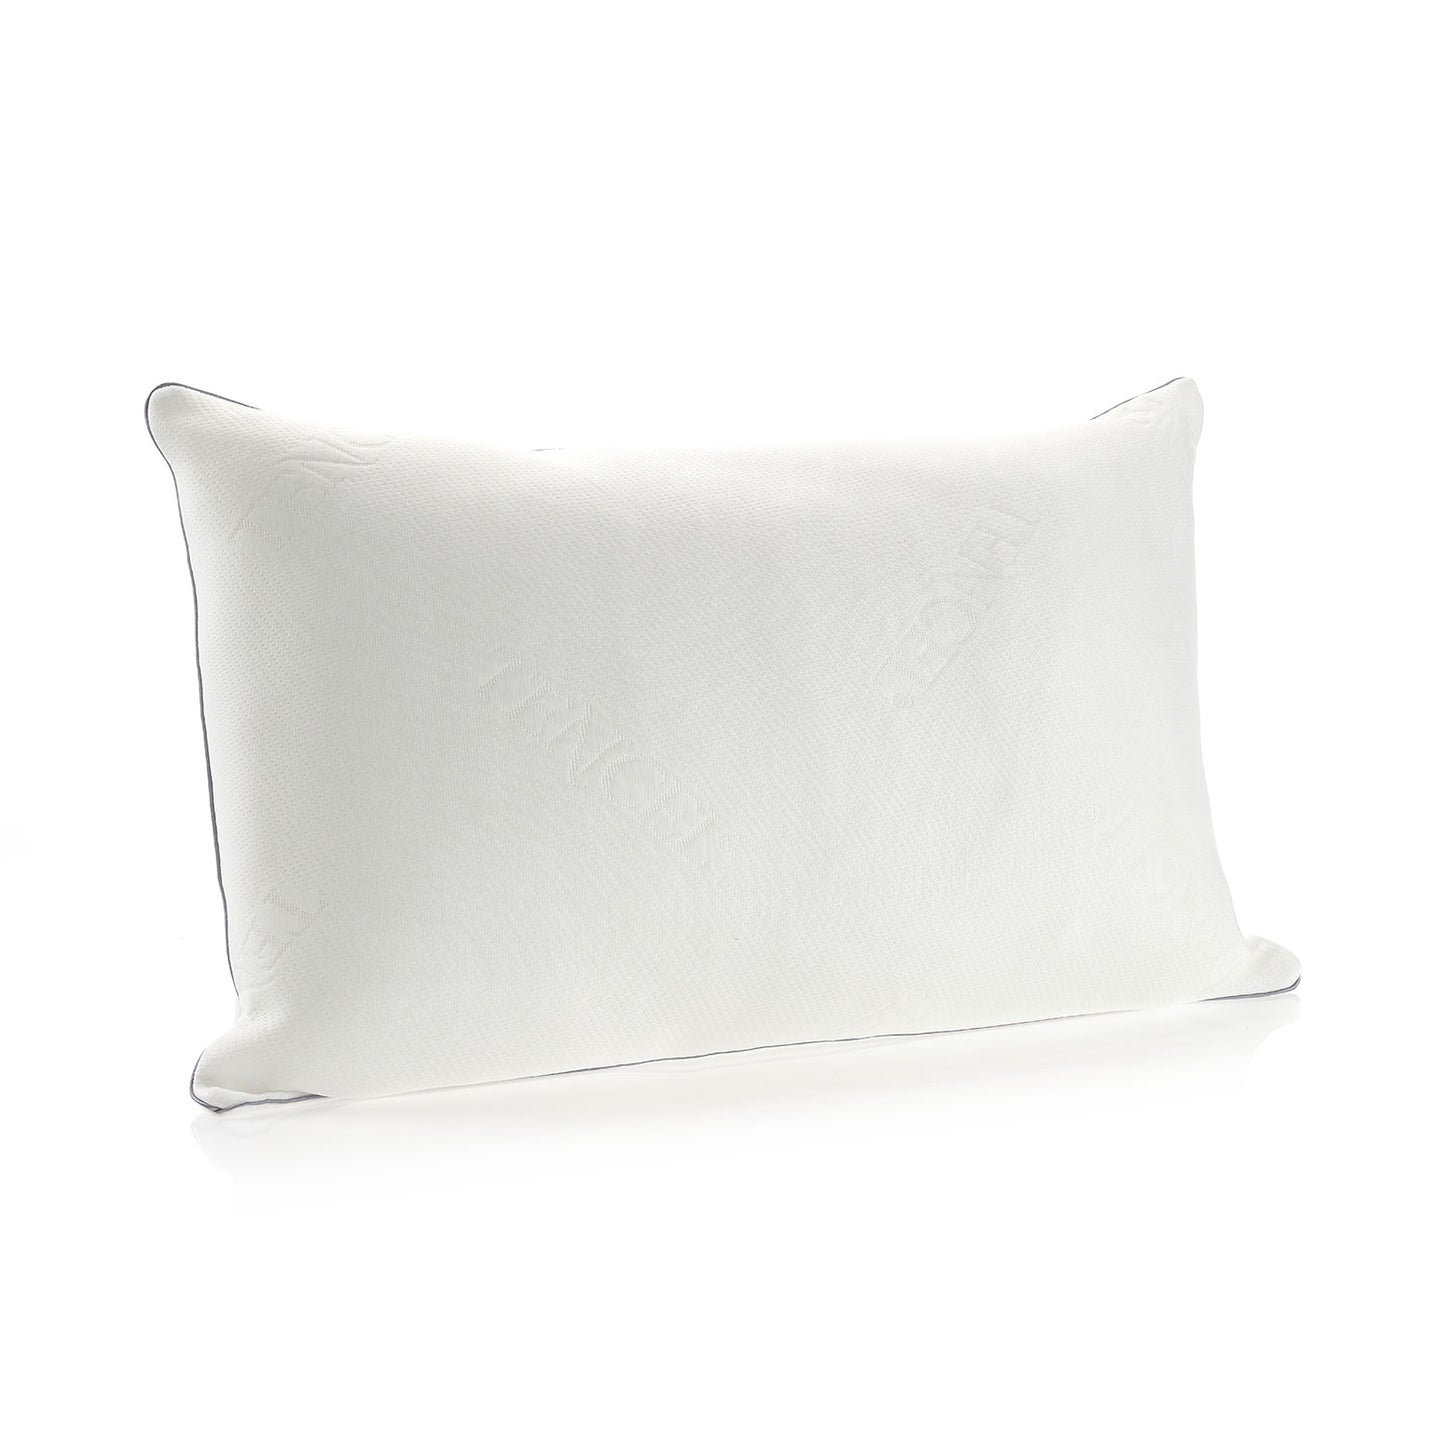 Cool Touch TENCEL™ Pillow - Medium Support